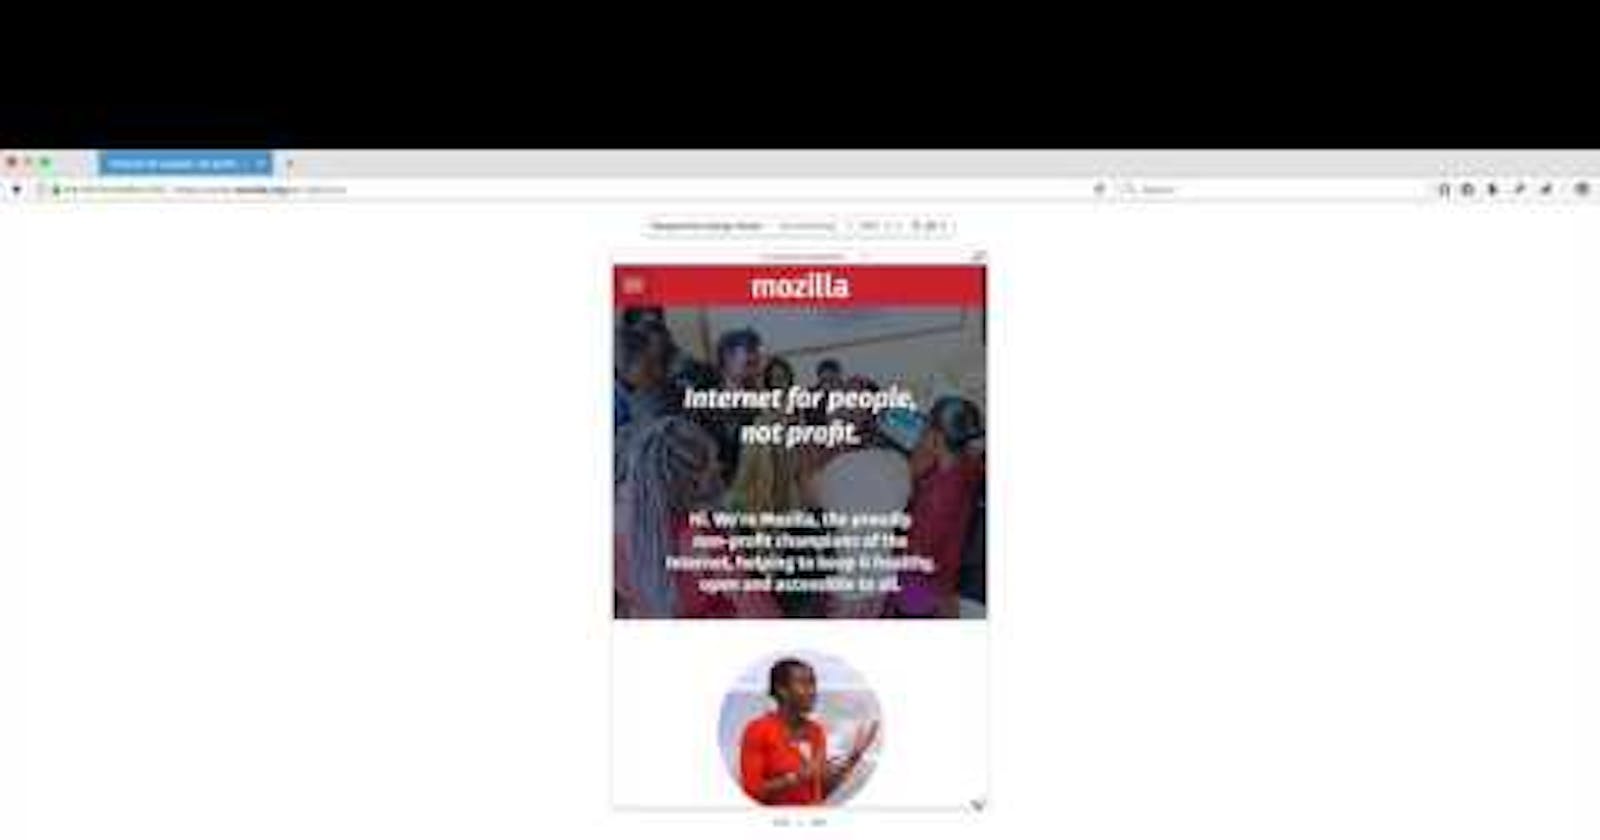 Responsive Design Mode in Firefox Developer Edition 52 - YouTube